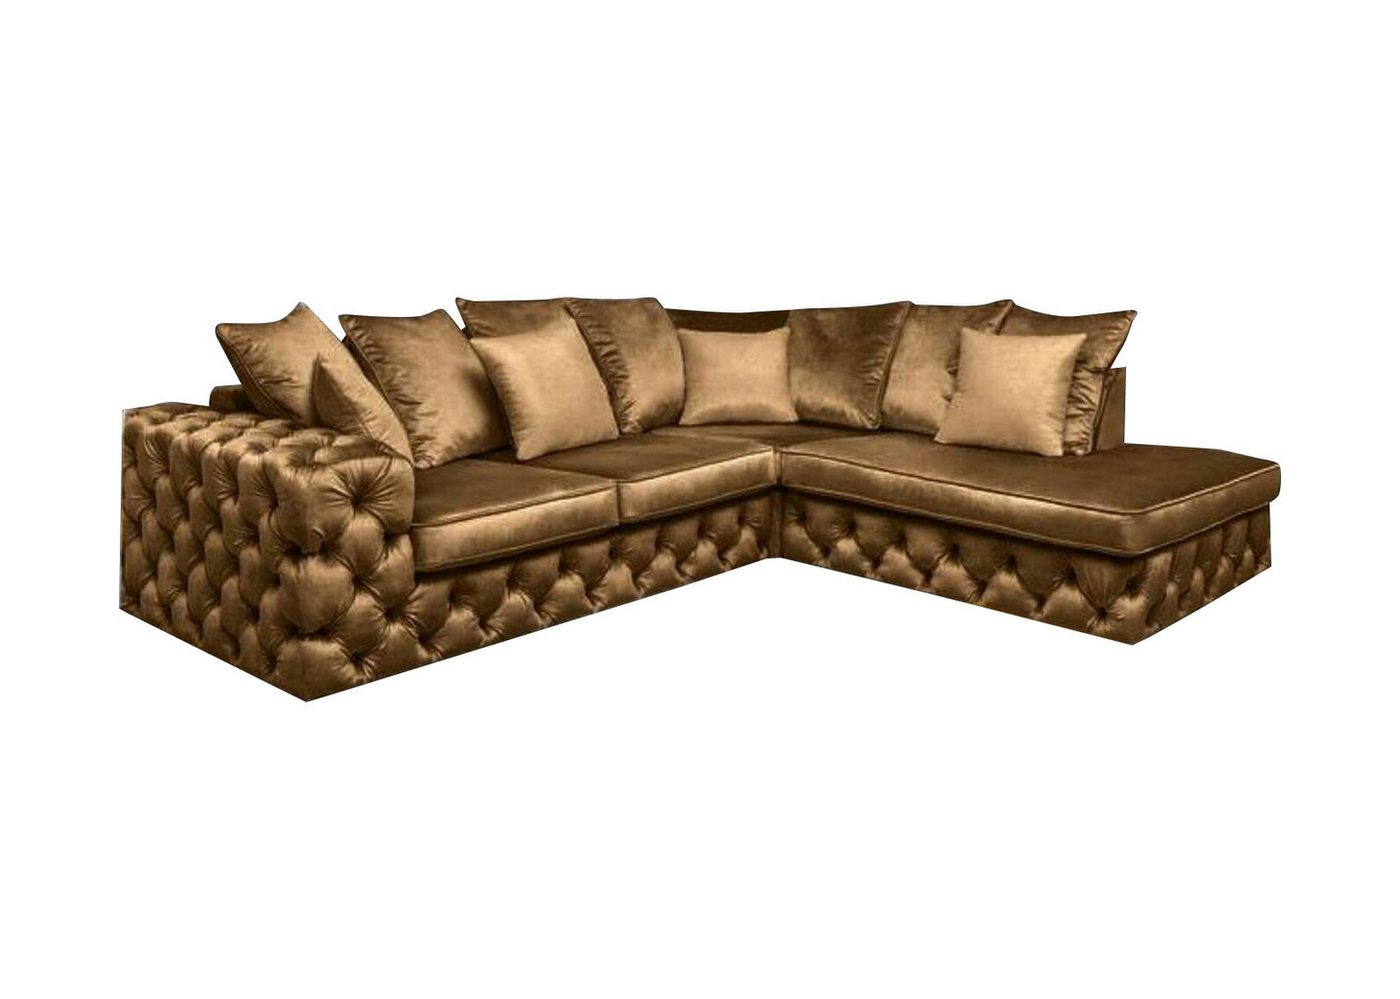 JVmoebel Ecksofa, Chesterfield L-Form Ecksofa Couch Polster Textil Garnitur Sofa von JVmoebel